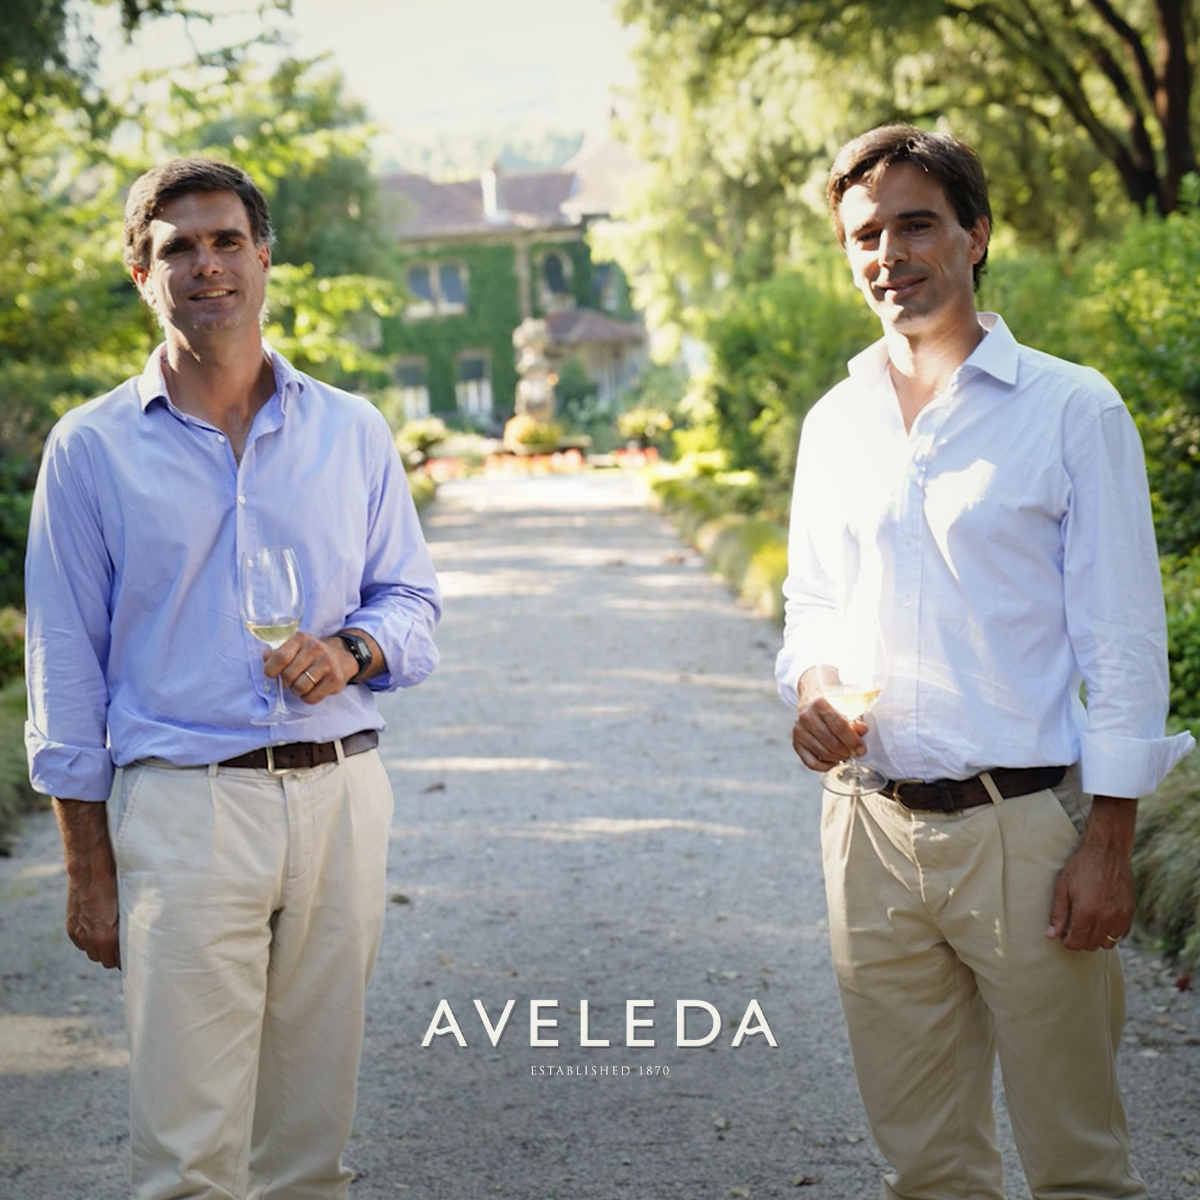 Aveleda nomeada European Winery of the Year pela Wine Enthusiast